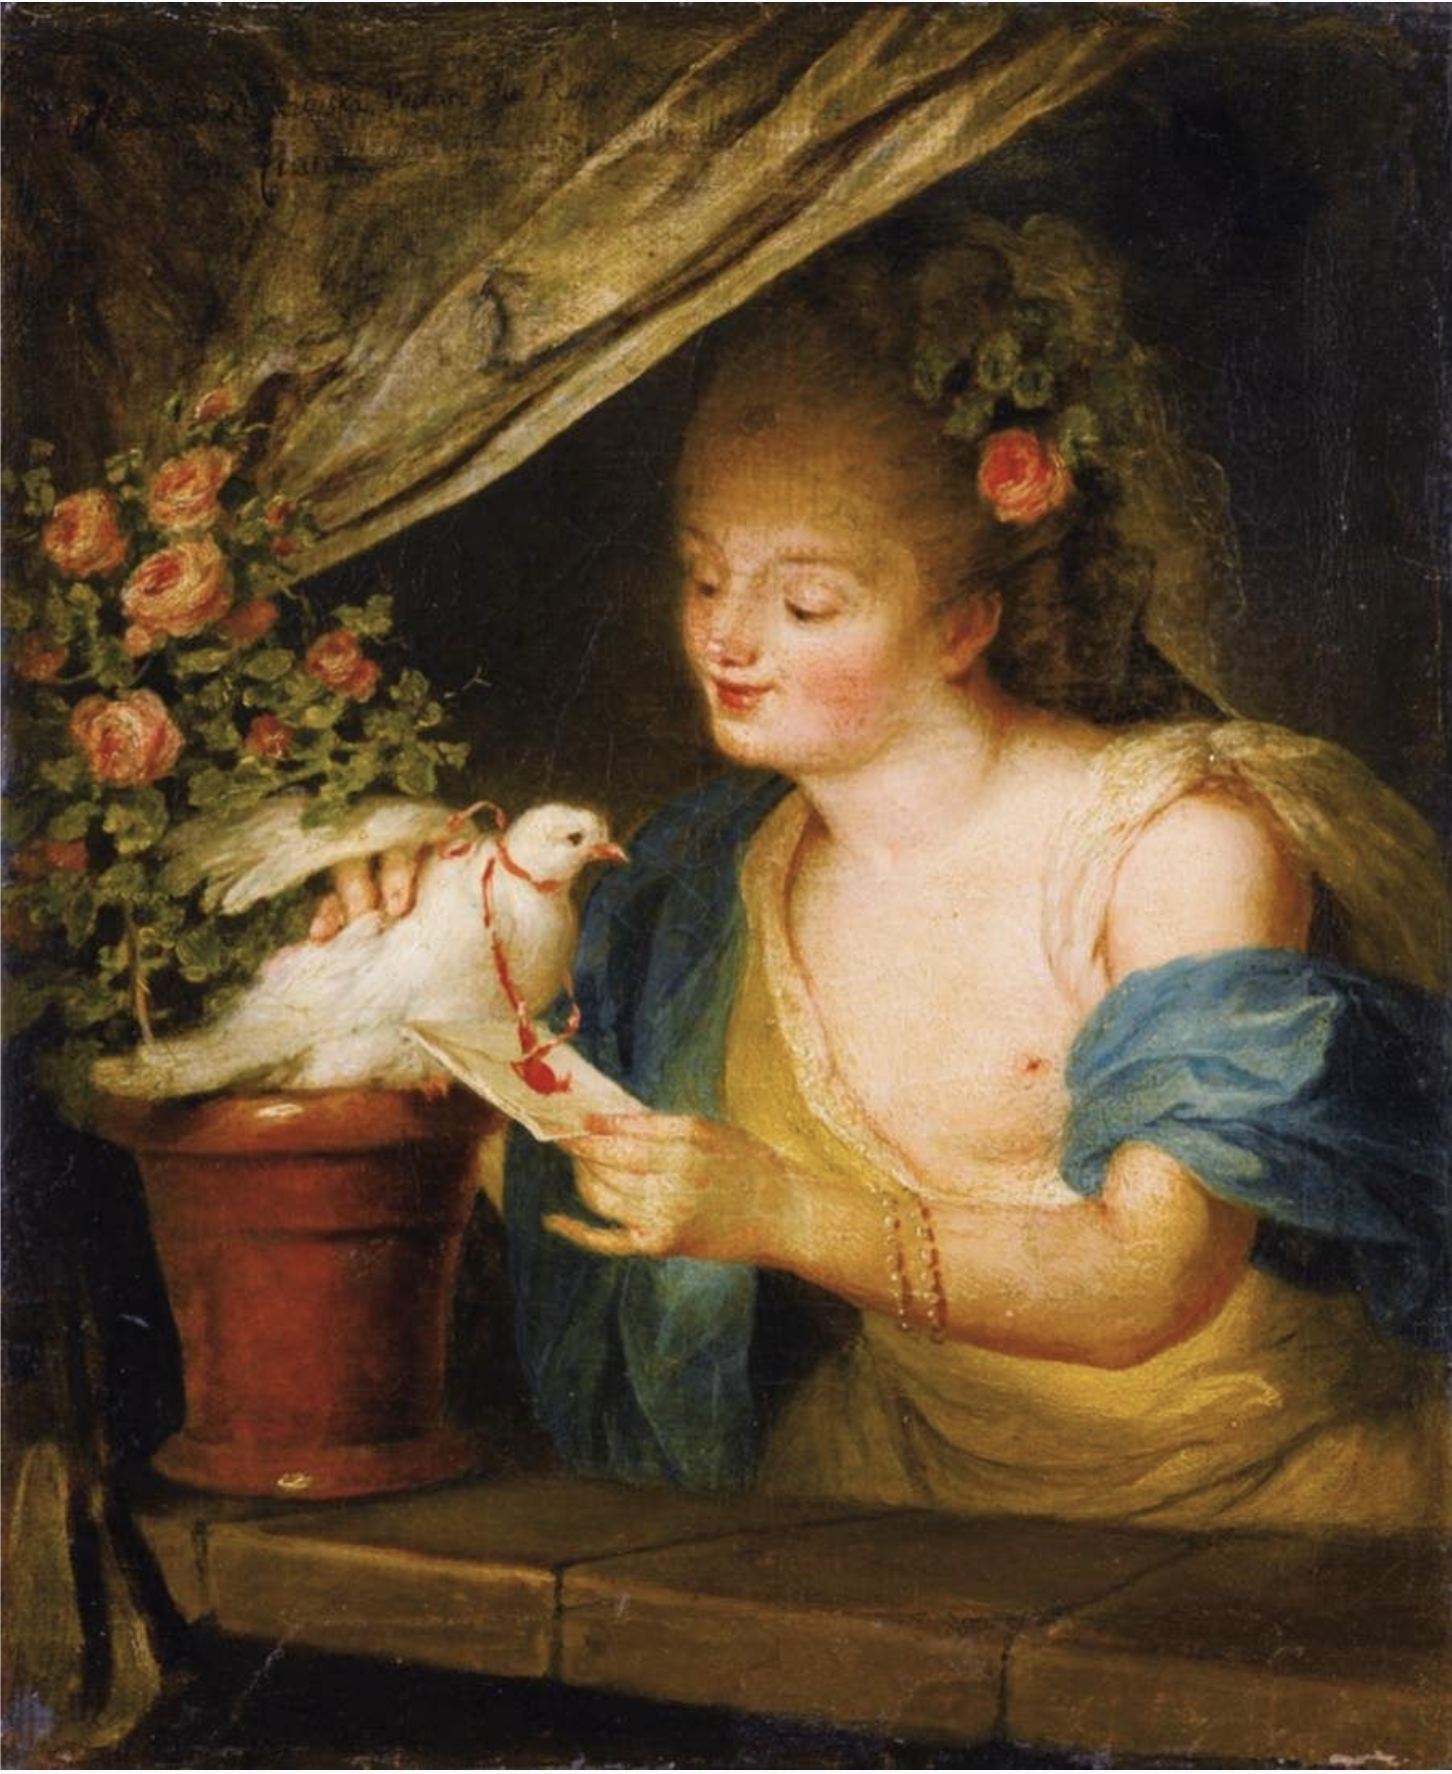 LISIEWSKA, Anna Dorothea The Arrival of the Love Letter 1760s